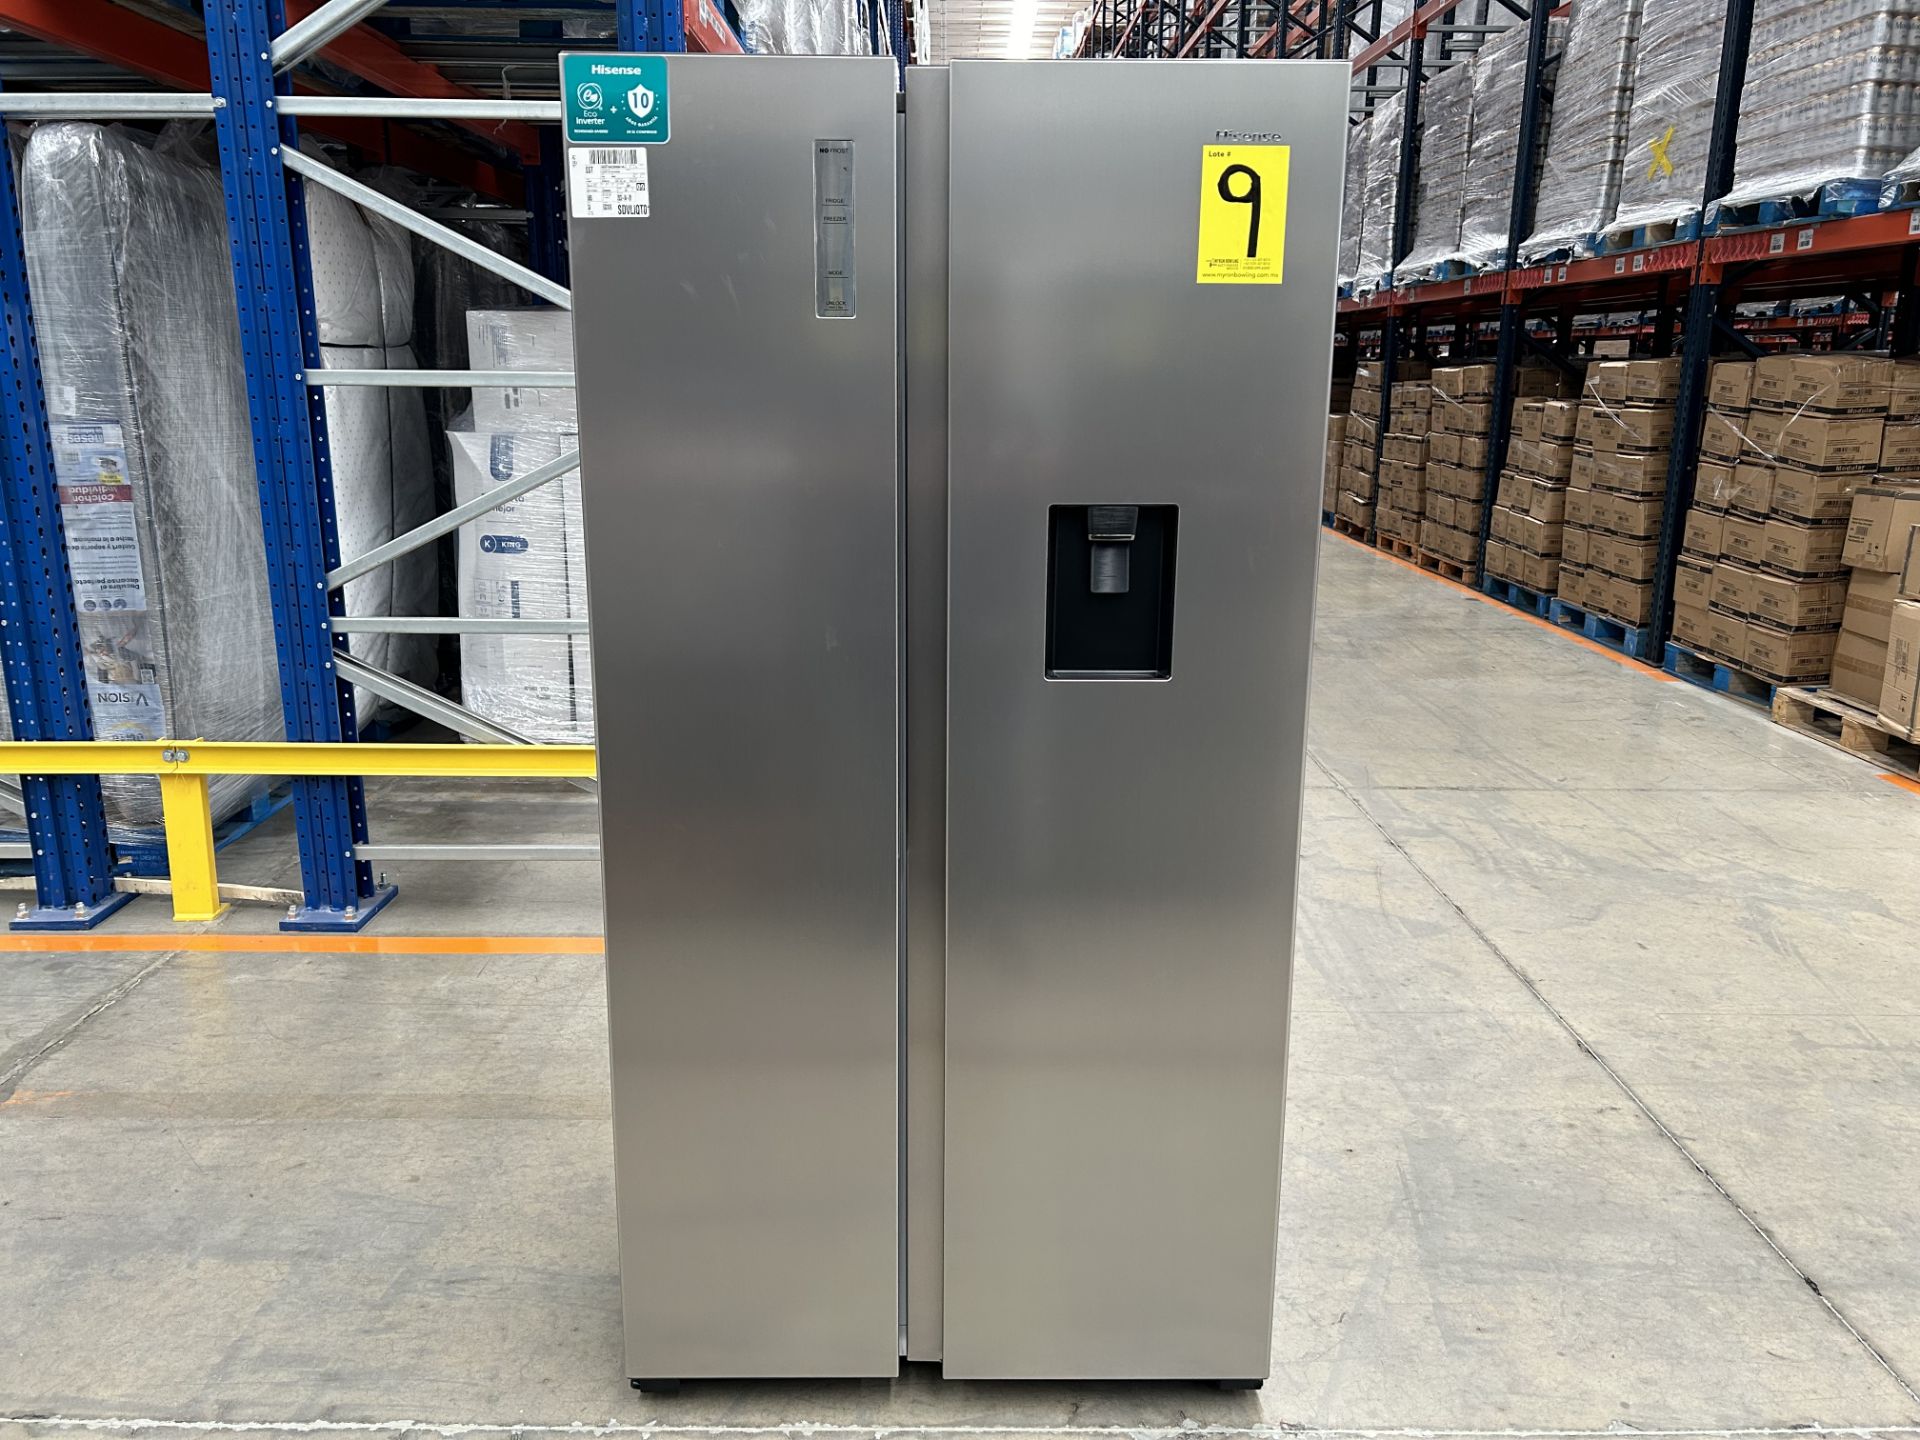 (NUEVO) Lote de 1 Refrigerador Marca HISENSE, Modelo RS19N6WCX, Serie 305487, Color GRIS